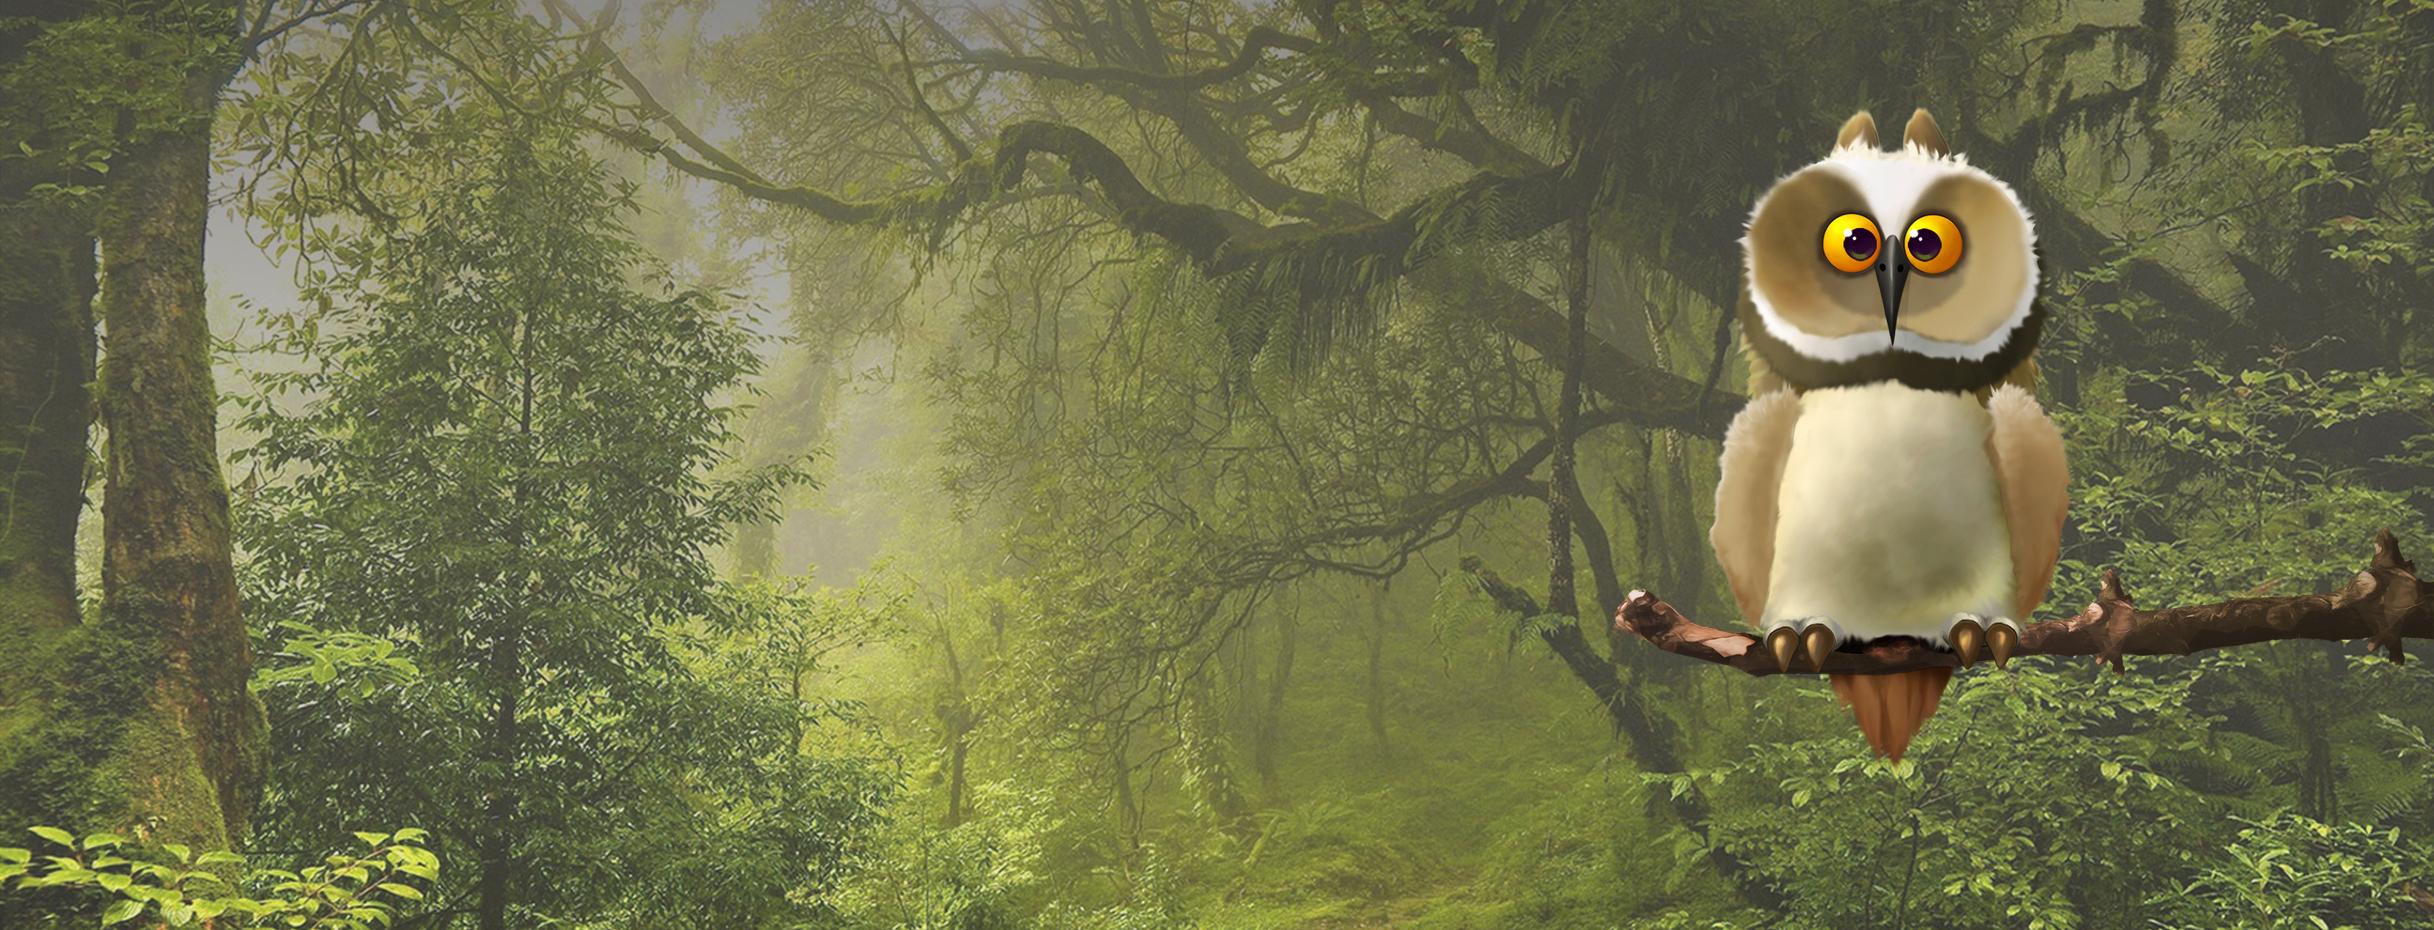 Die Eule, genannt klima Buddy sitzt auf einem Ast im Wald